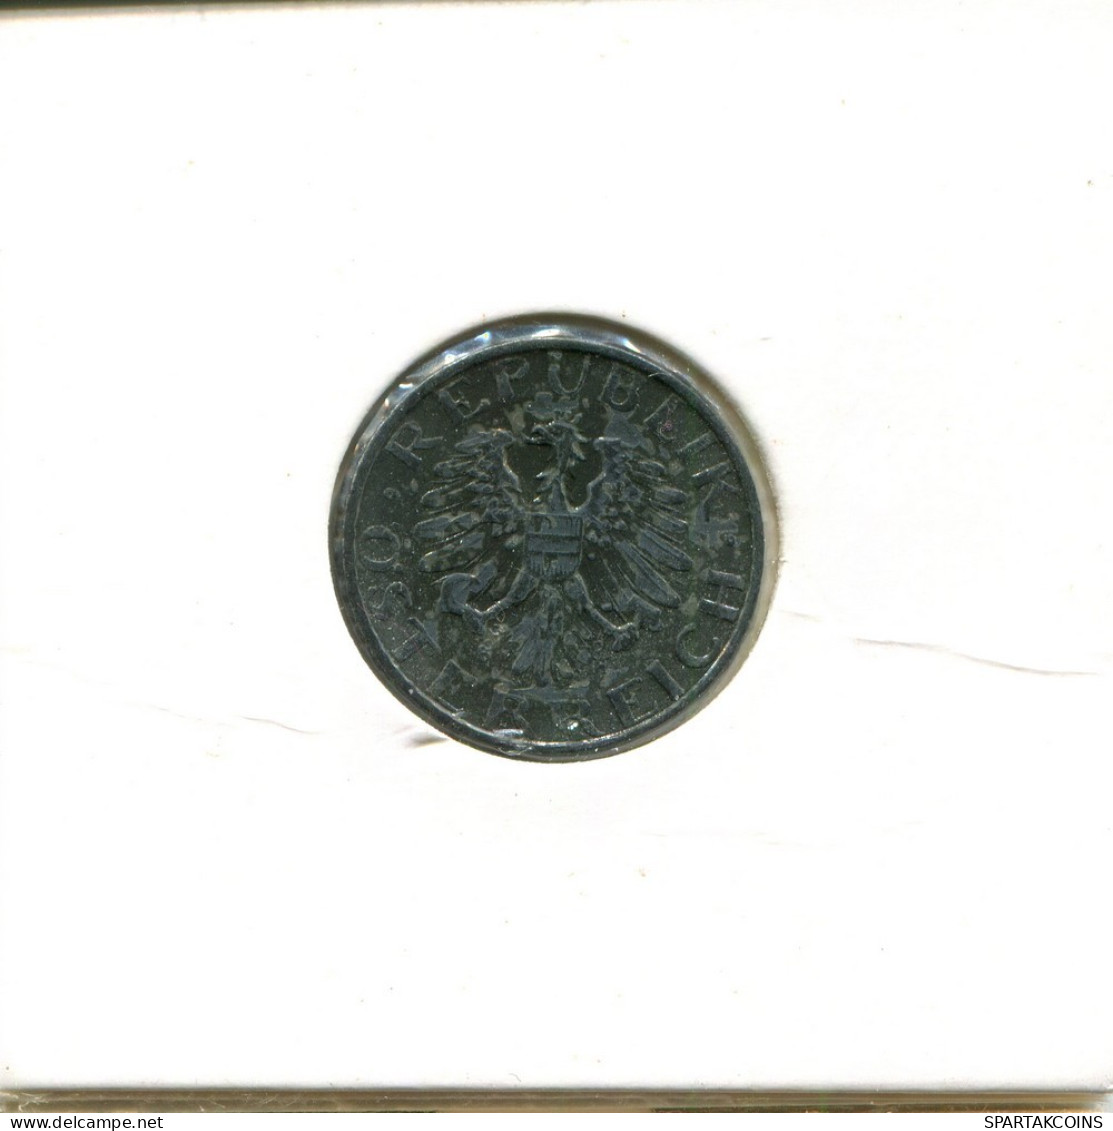 5 GROSCHEN 1962 AUSTRIA Coin #AT502.U.A - Oostenrijk